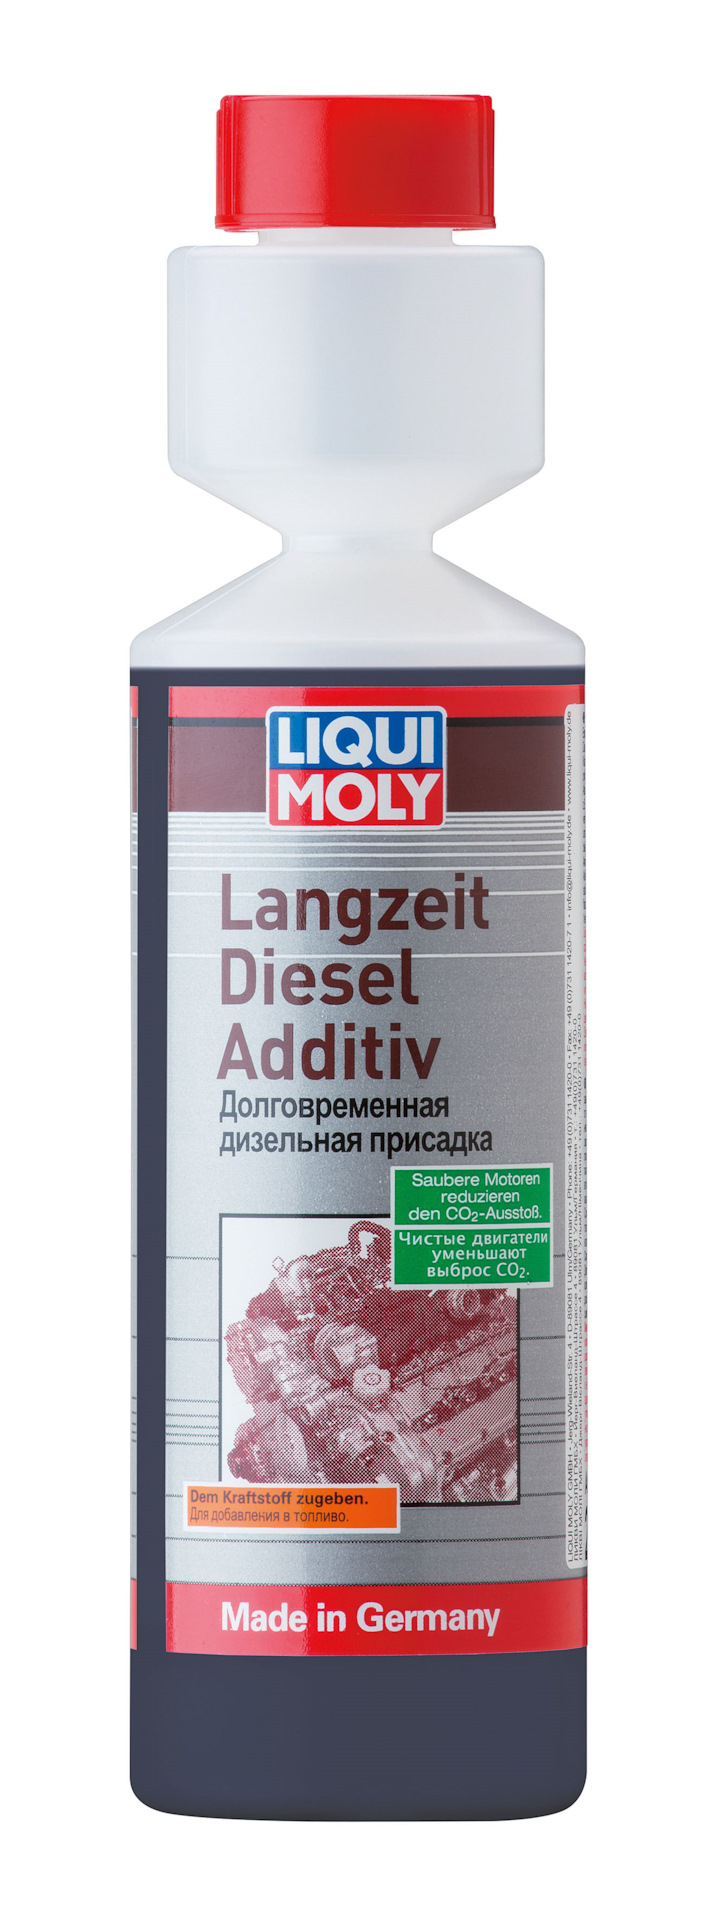  в дизель Langzeit Diesel Additiv от Ликви Молли — Volkswagen .